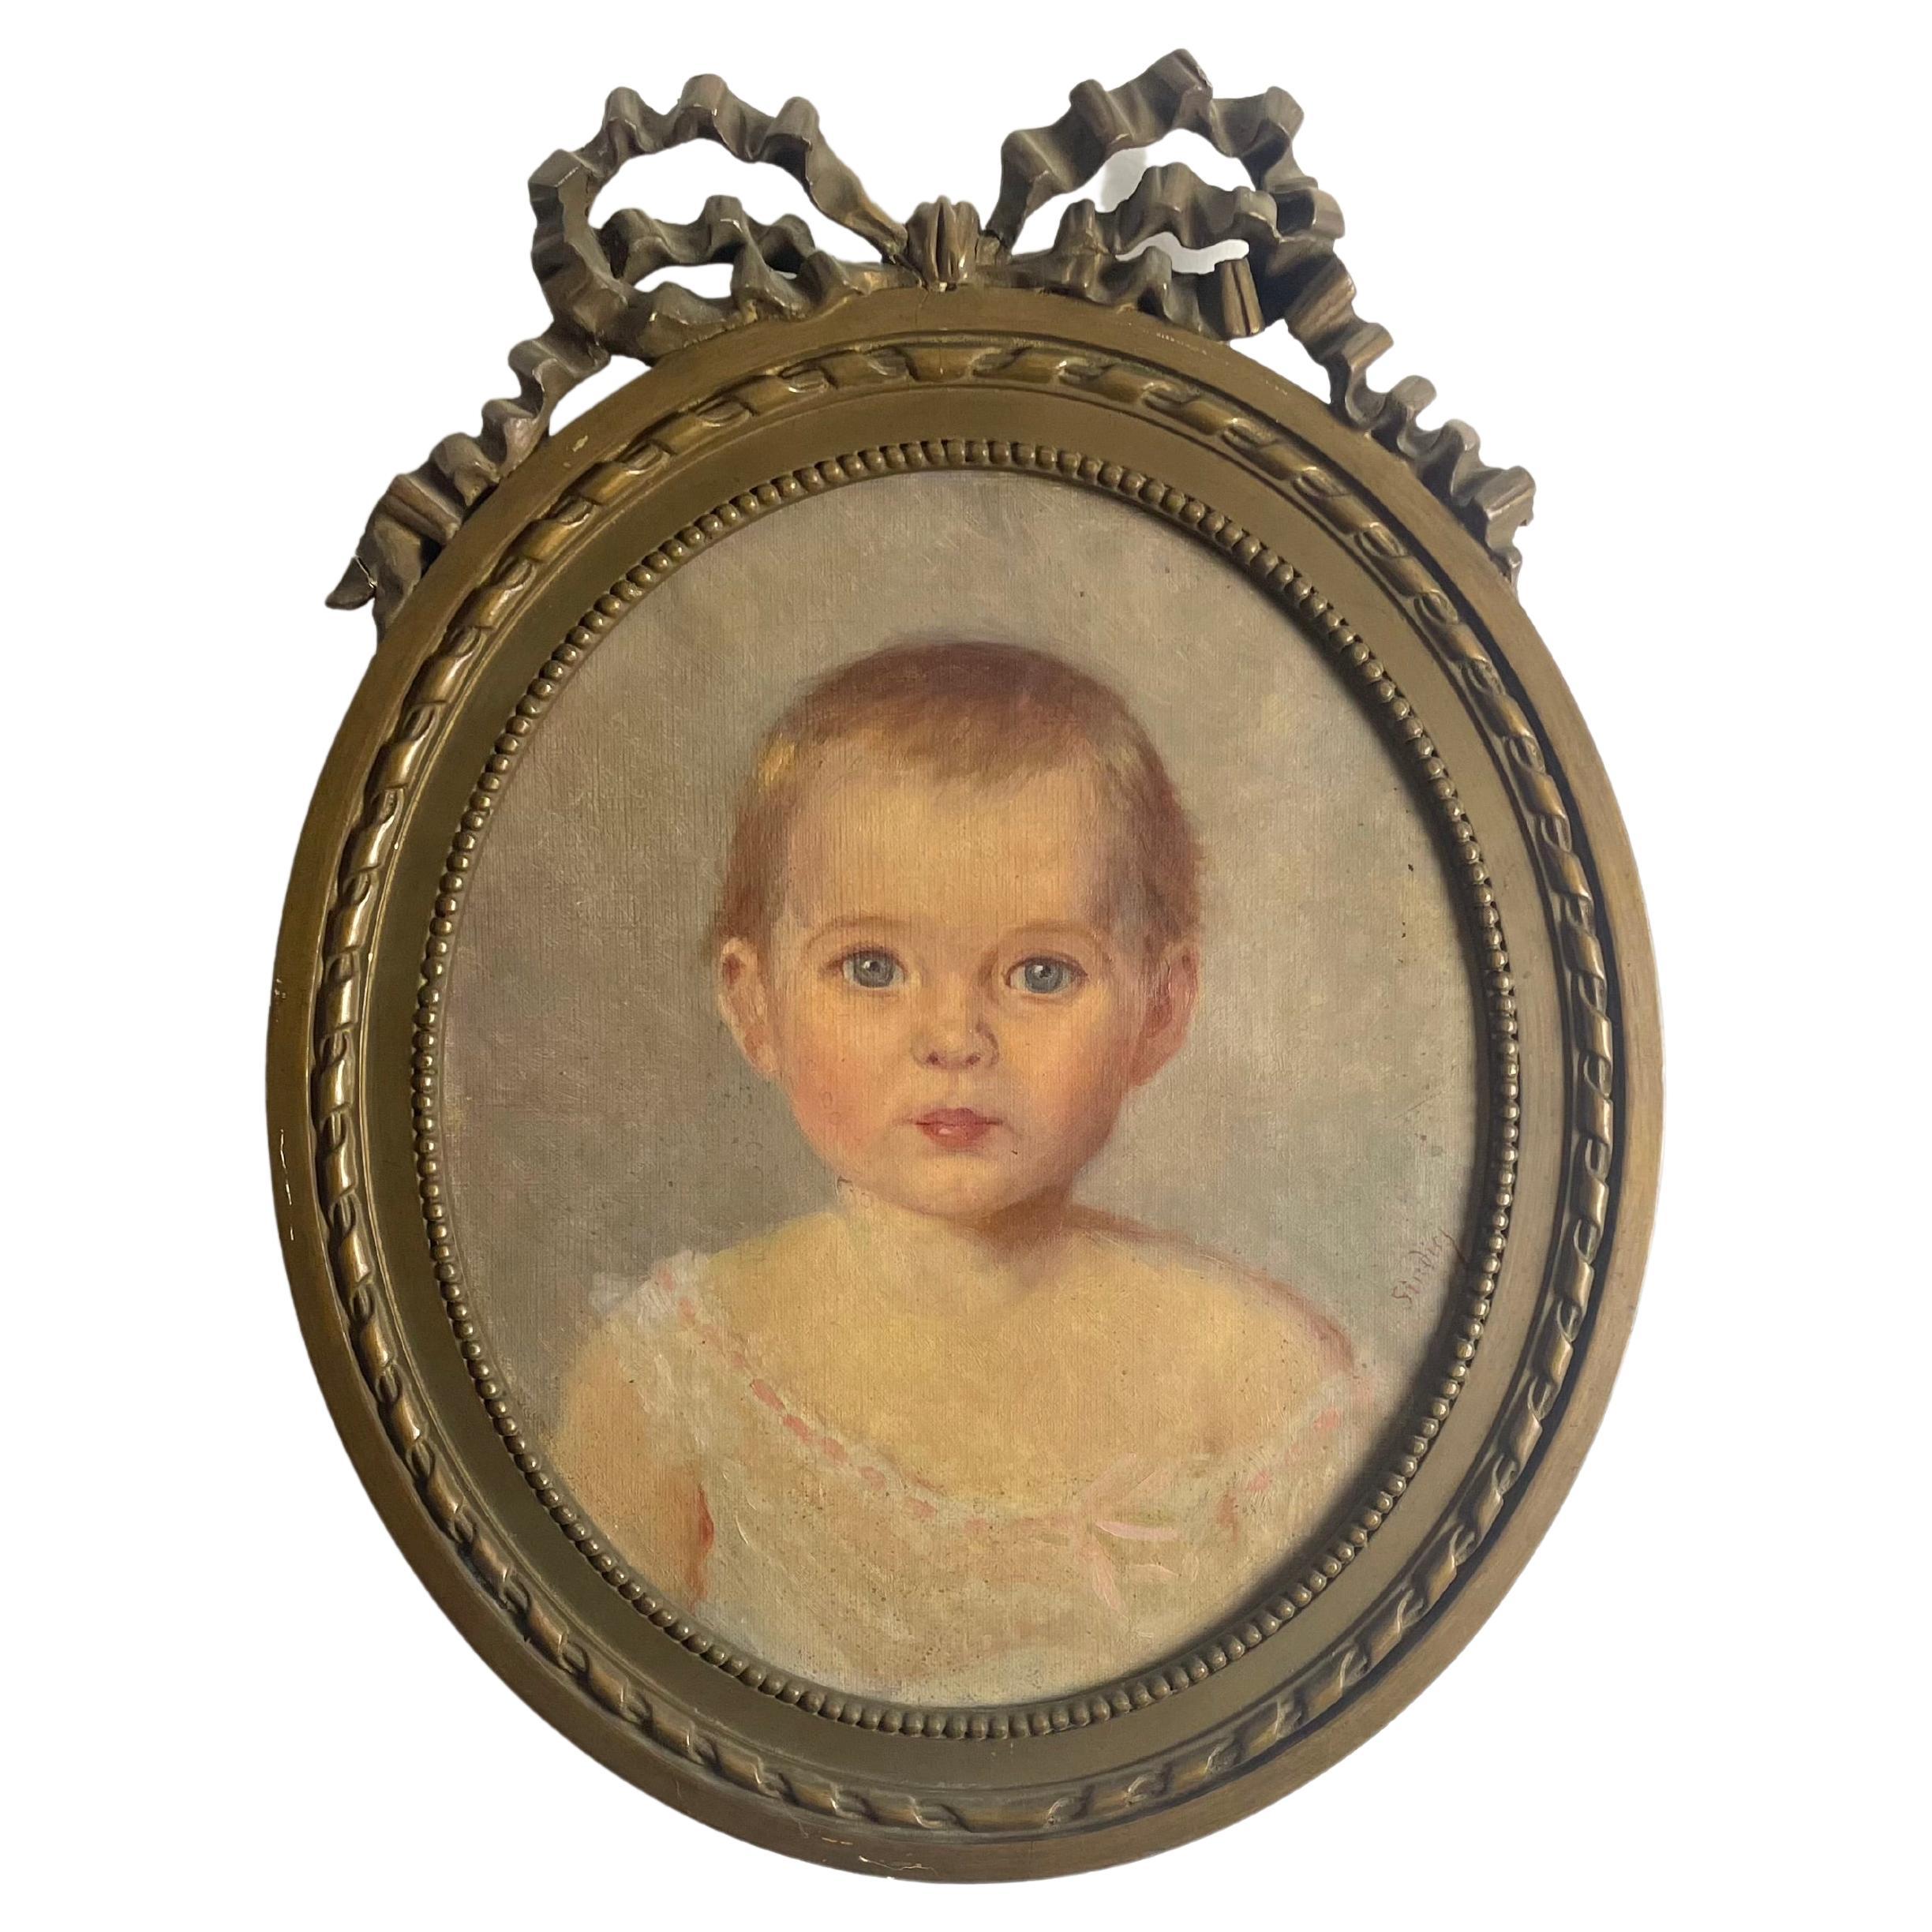 Porträt eines Babys / eines jungen Kindes - Malerei - Öl auf Leinwand - gerahmt - 19. Frankreich. 